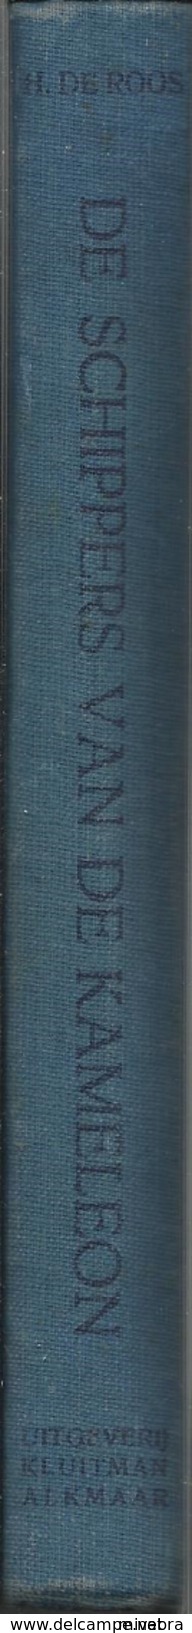 1e Druk 1949 DE SCHIPPERS VAN DE KAMELEON / H. DE ROOS / Uitg. KLUITMAN ALKMAAR Illustraties POL DOM  Collectorsitem - Antiquariat